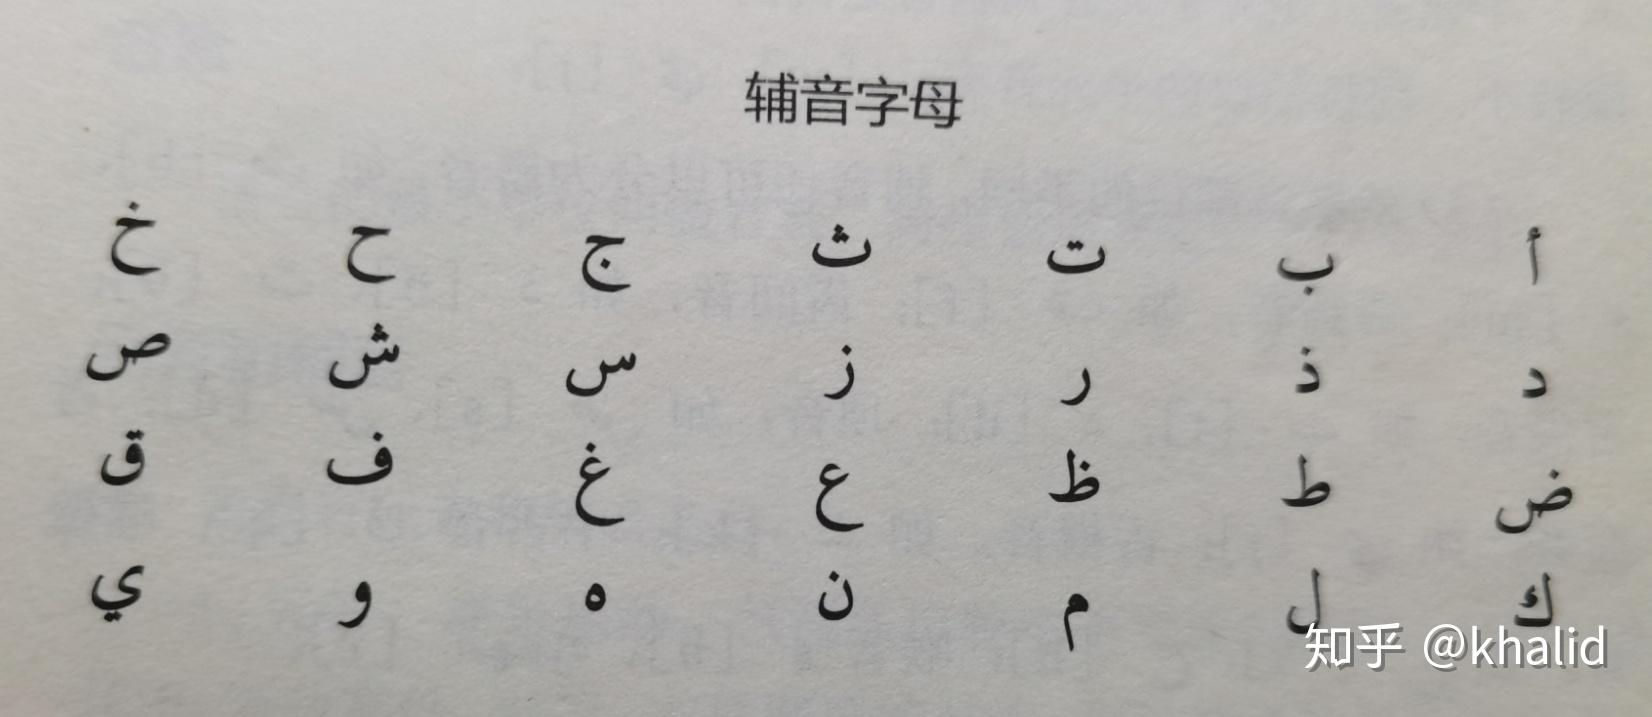 关于阿拉伯字母手写体